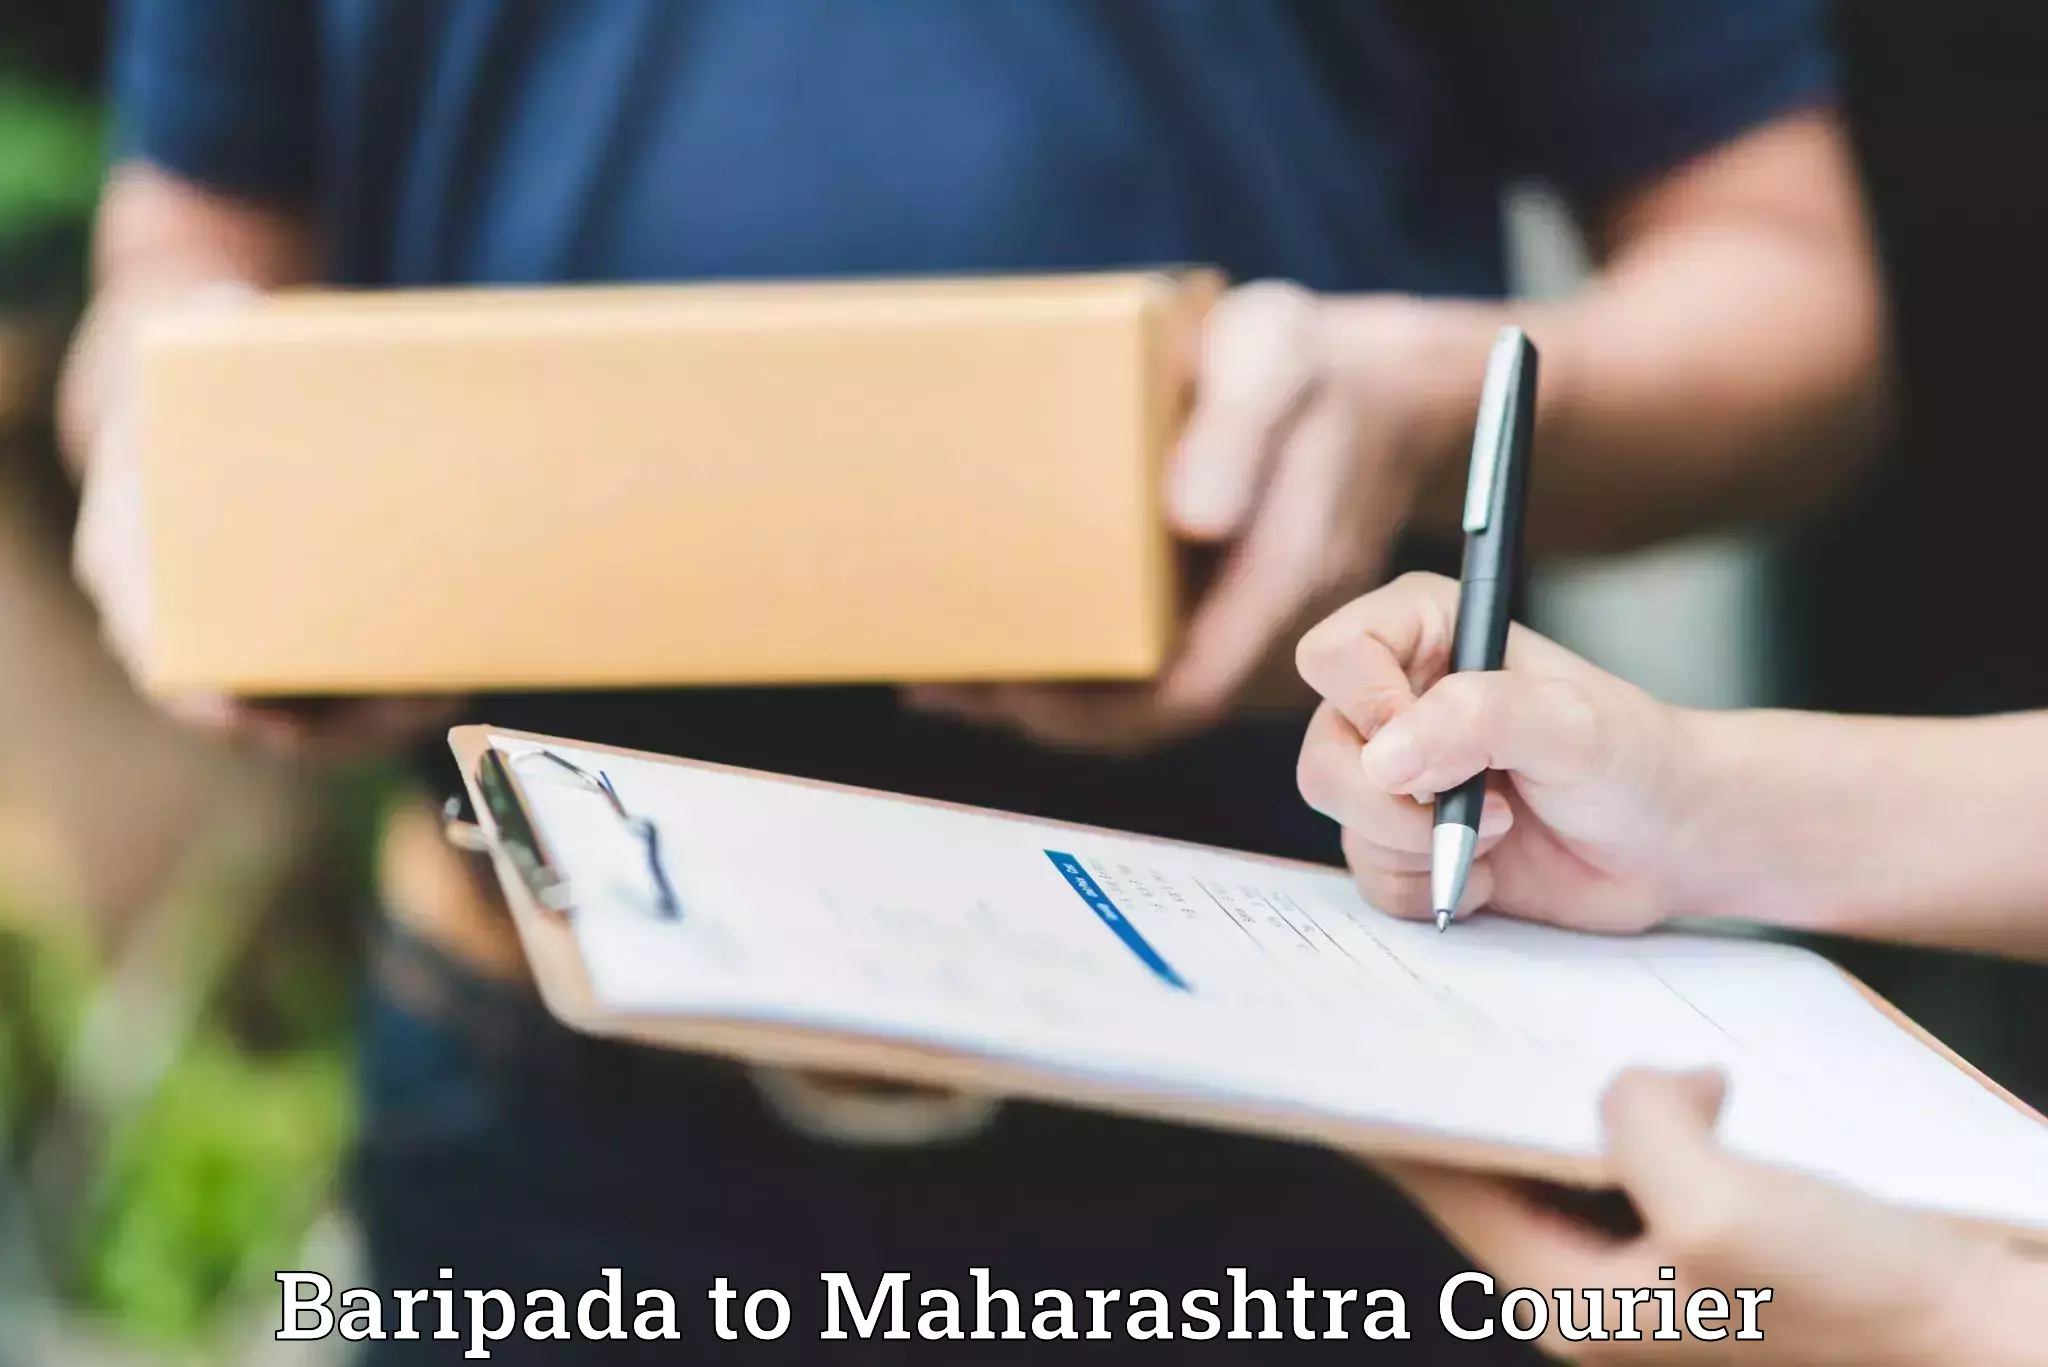 Packing and moving services Baripada to Maharashtra